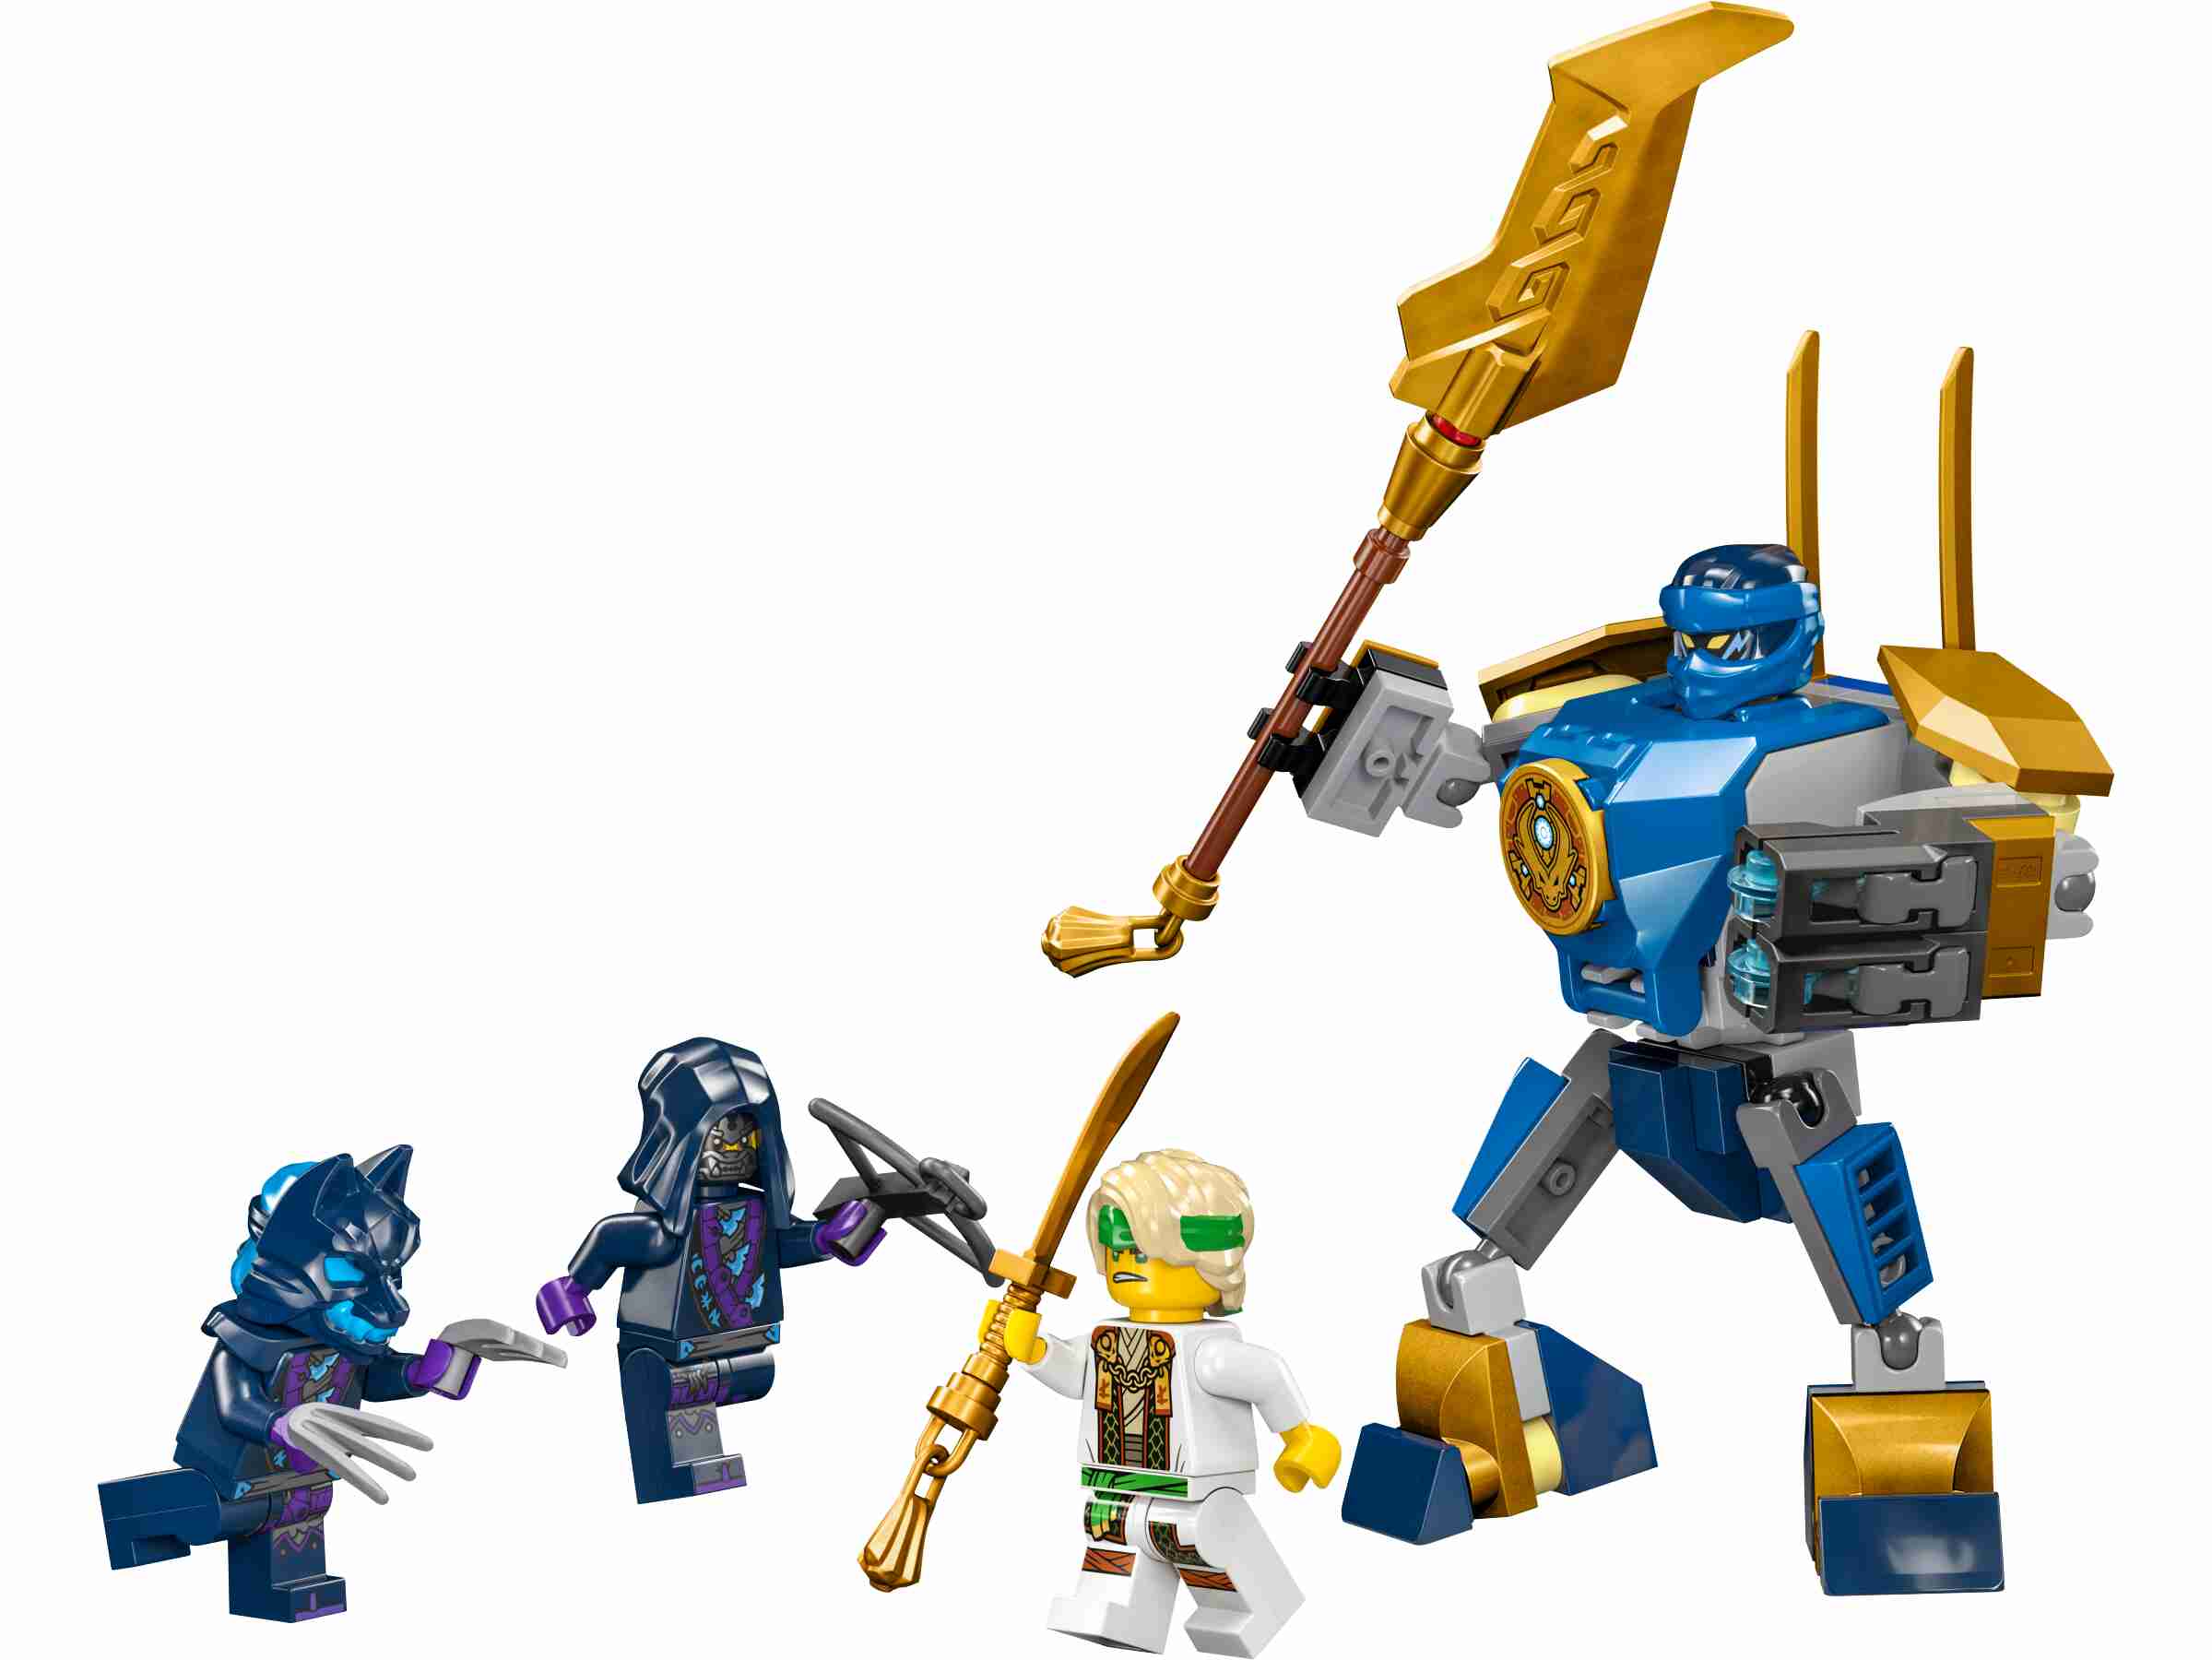 LEGO 71805 NINJAGO Jays Battle Mech, 4 Minifiguren, Beweglicher Mech